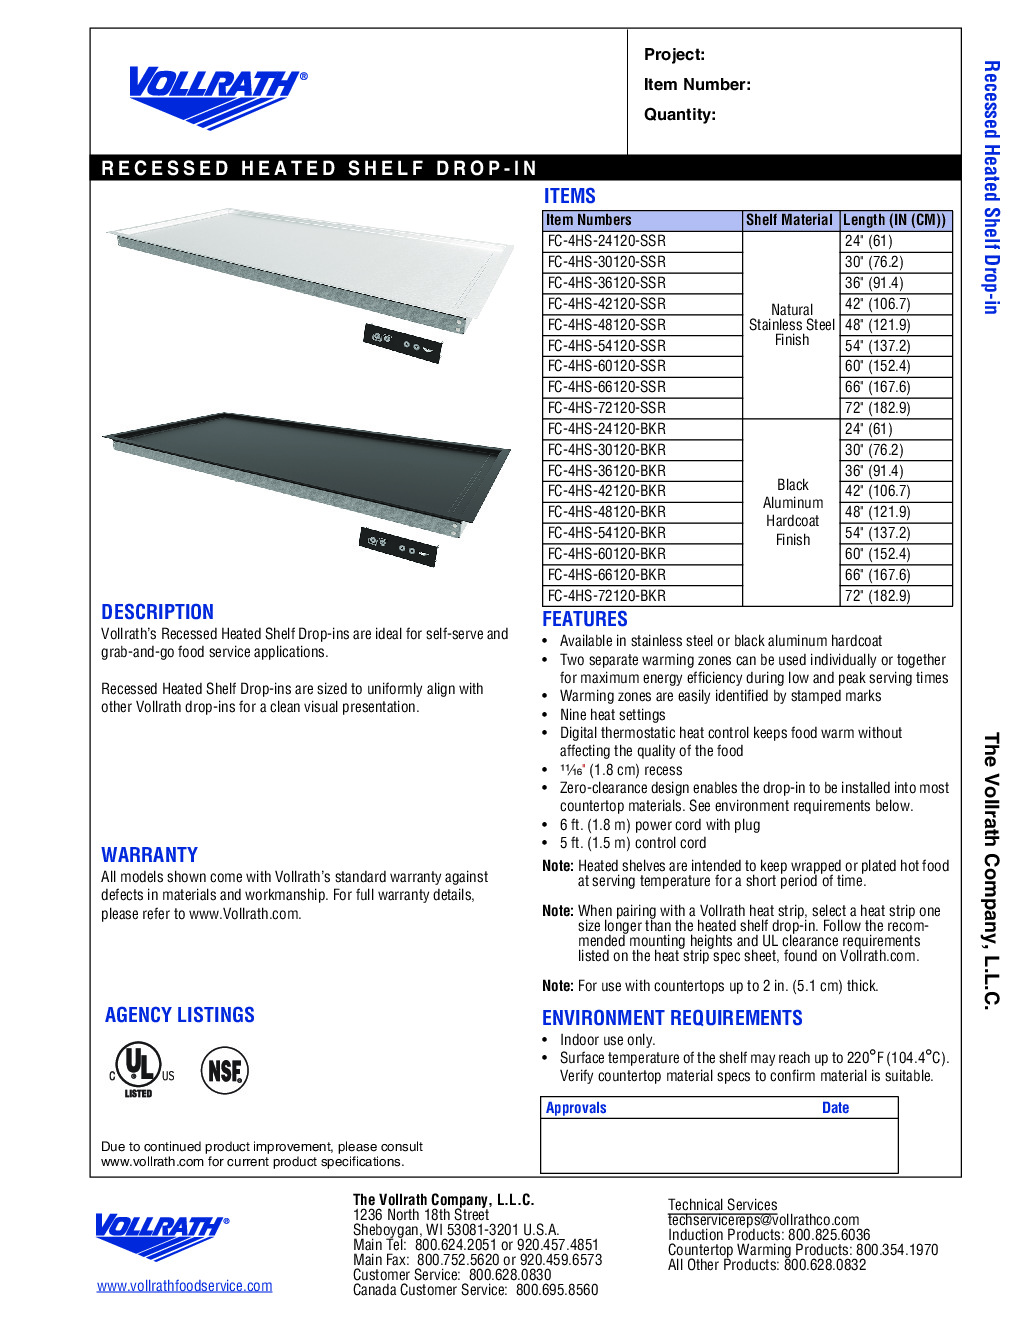 Vollrath FC-4HS-66120-SSR Heated Shelf Food Warmer